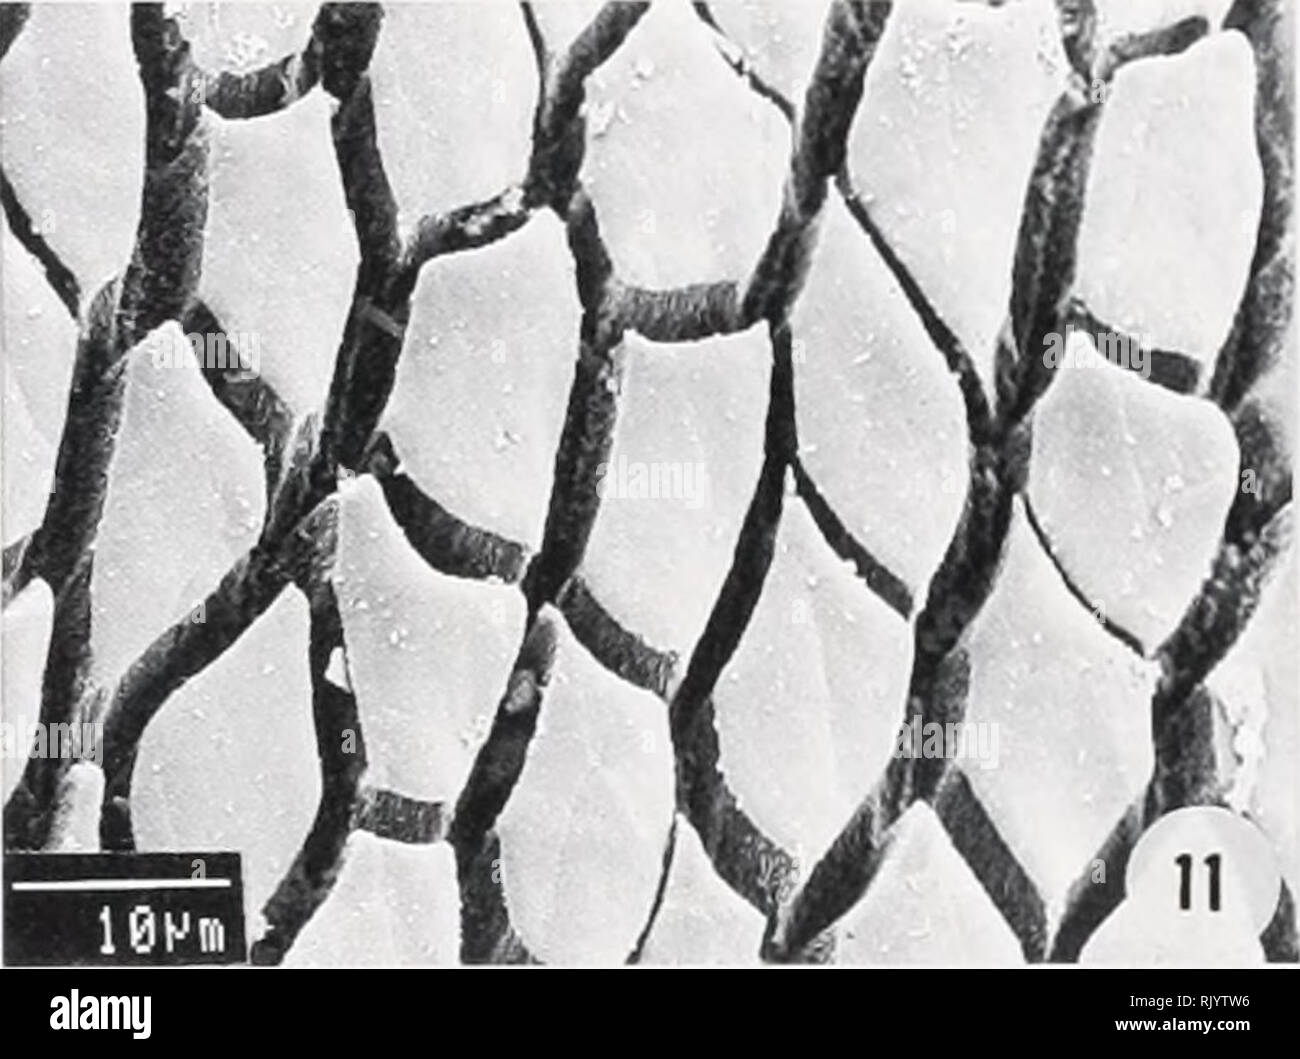 . Herpetological asiatico ricerca. Rettili -- Asia periodici; Anfibi -- Asia periodici. FIG. 10. Prismatica allungata di cellule con proiezioni distale sul pad del dito III {Amolops sp. 3, MNHN 1987.2140, Thailandia).. FIG. 11. Prismatica allungata con celle di piccole sporgenze distale sul pad del dito III {Amolops marmoratus, MNHN 1988.2787, Nepal).. Si prega di notare che queste immagini vengono estratte dalla pagina sottoposta a scansione di immagini che possono essere state migliorate digitalmente per la leggibilità - Colorazione e aspetto di queste illustrazioni potrebbero non perfettamente assomigliano al lavoro originale. Herpetological asiatico Res Foto Stock